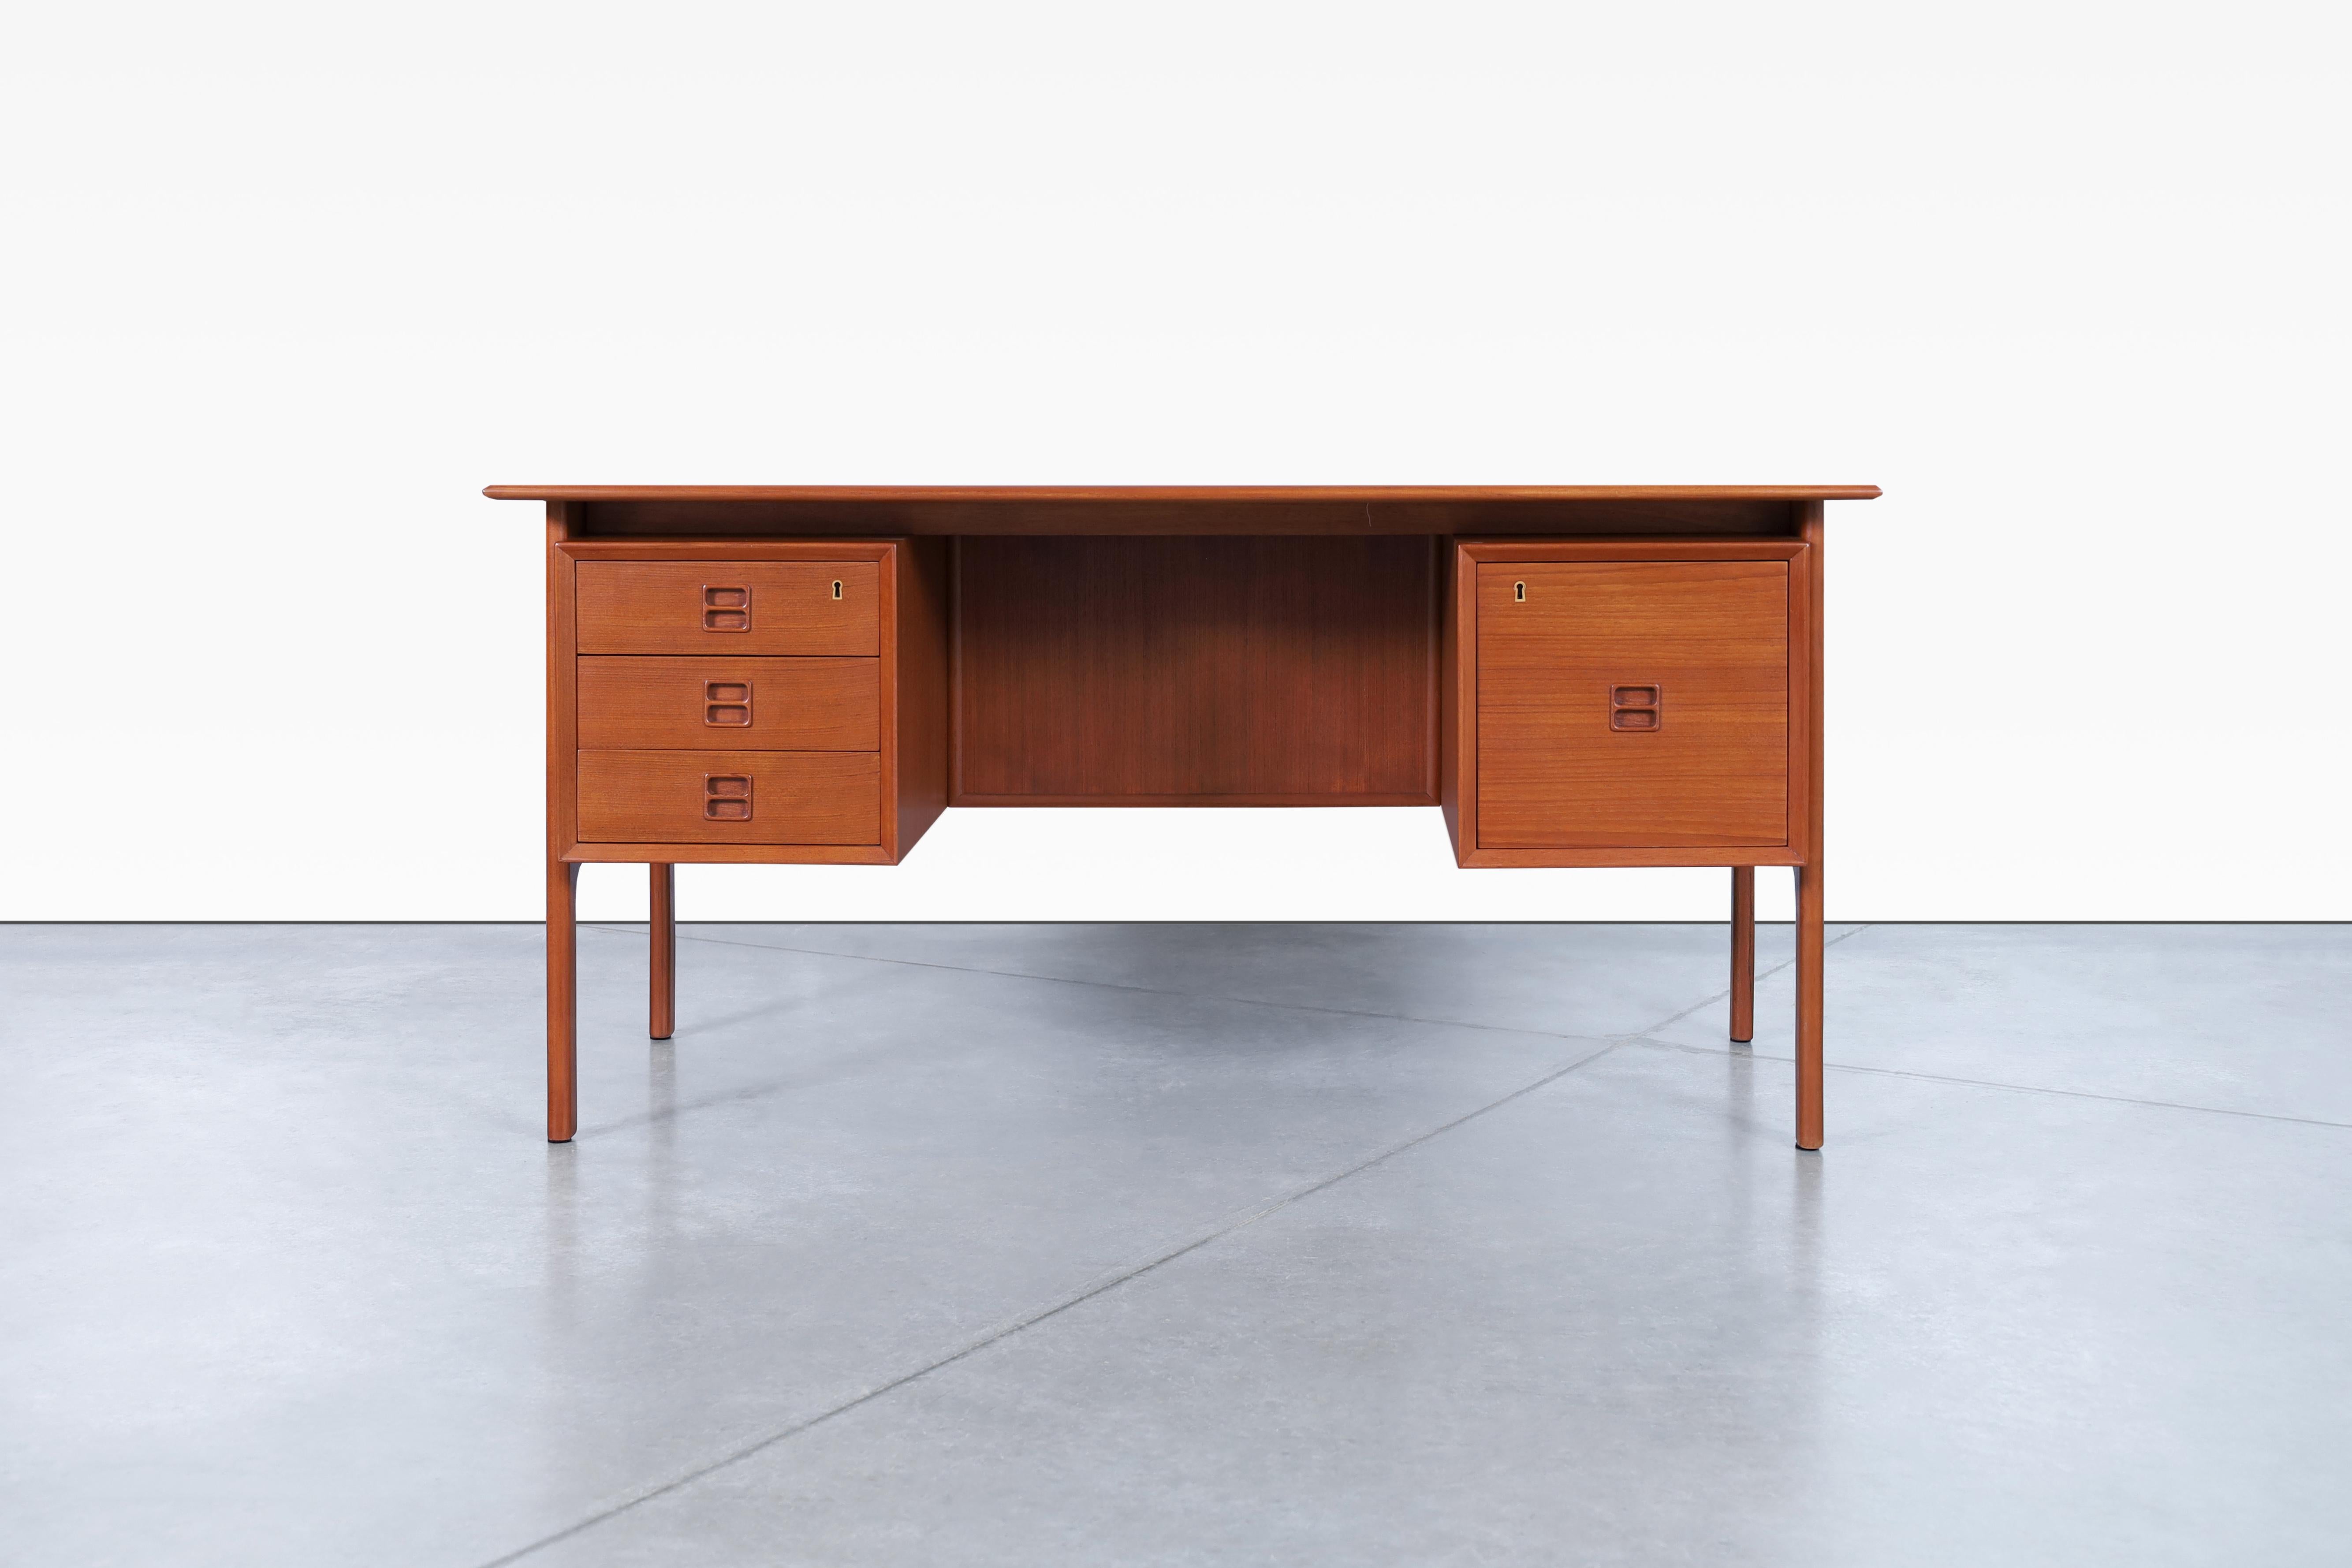 Wunderschöner moderner dänischer Schreibtisch aus Teakholz, entworfen von Erik Brouer für die Brouer Møbelfabrik in Dänemark, ca. 1960. Dieser atemberaubend restaurierte Schreibtisch wurde fachmännisch gefertigt und repräsentiert das dänische Design